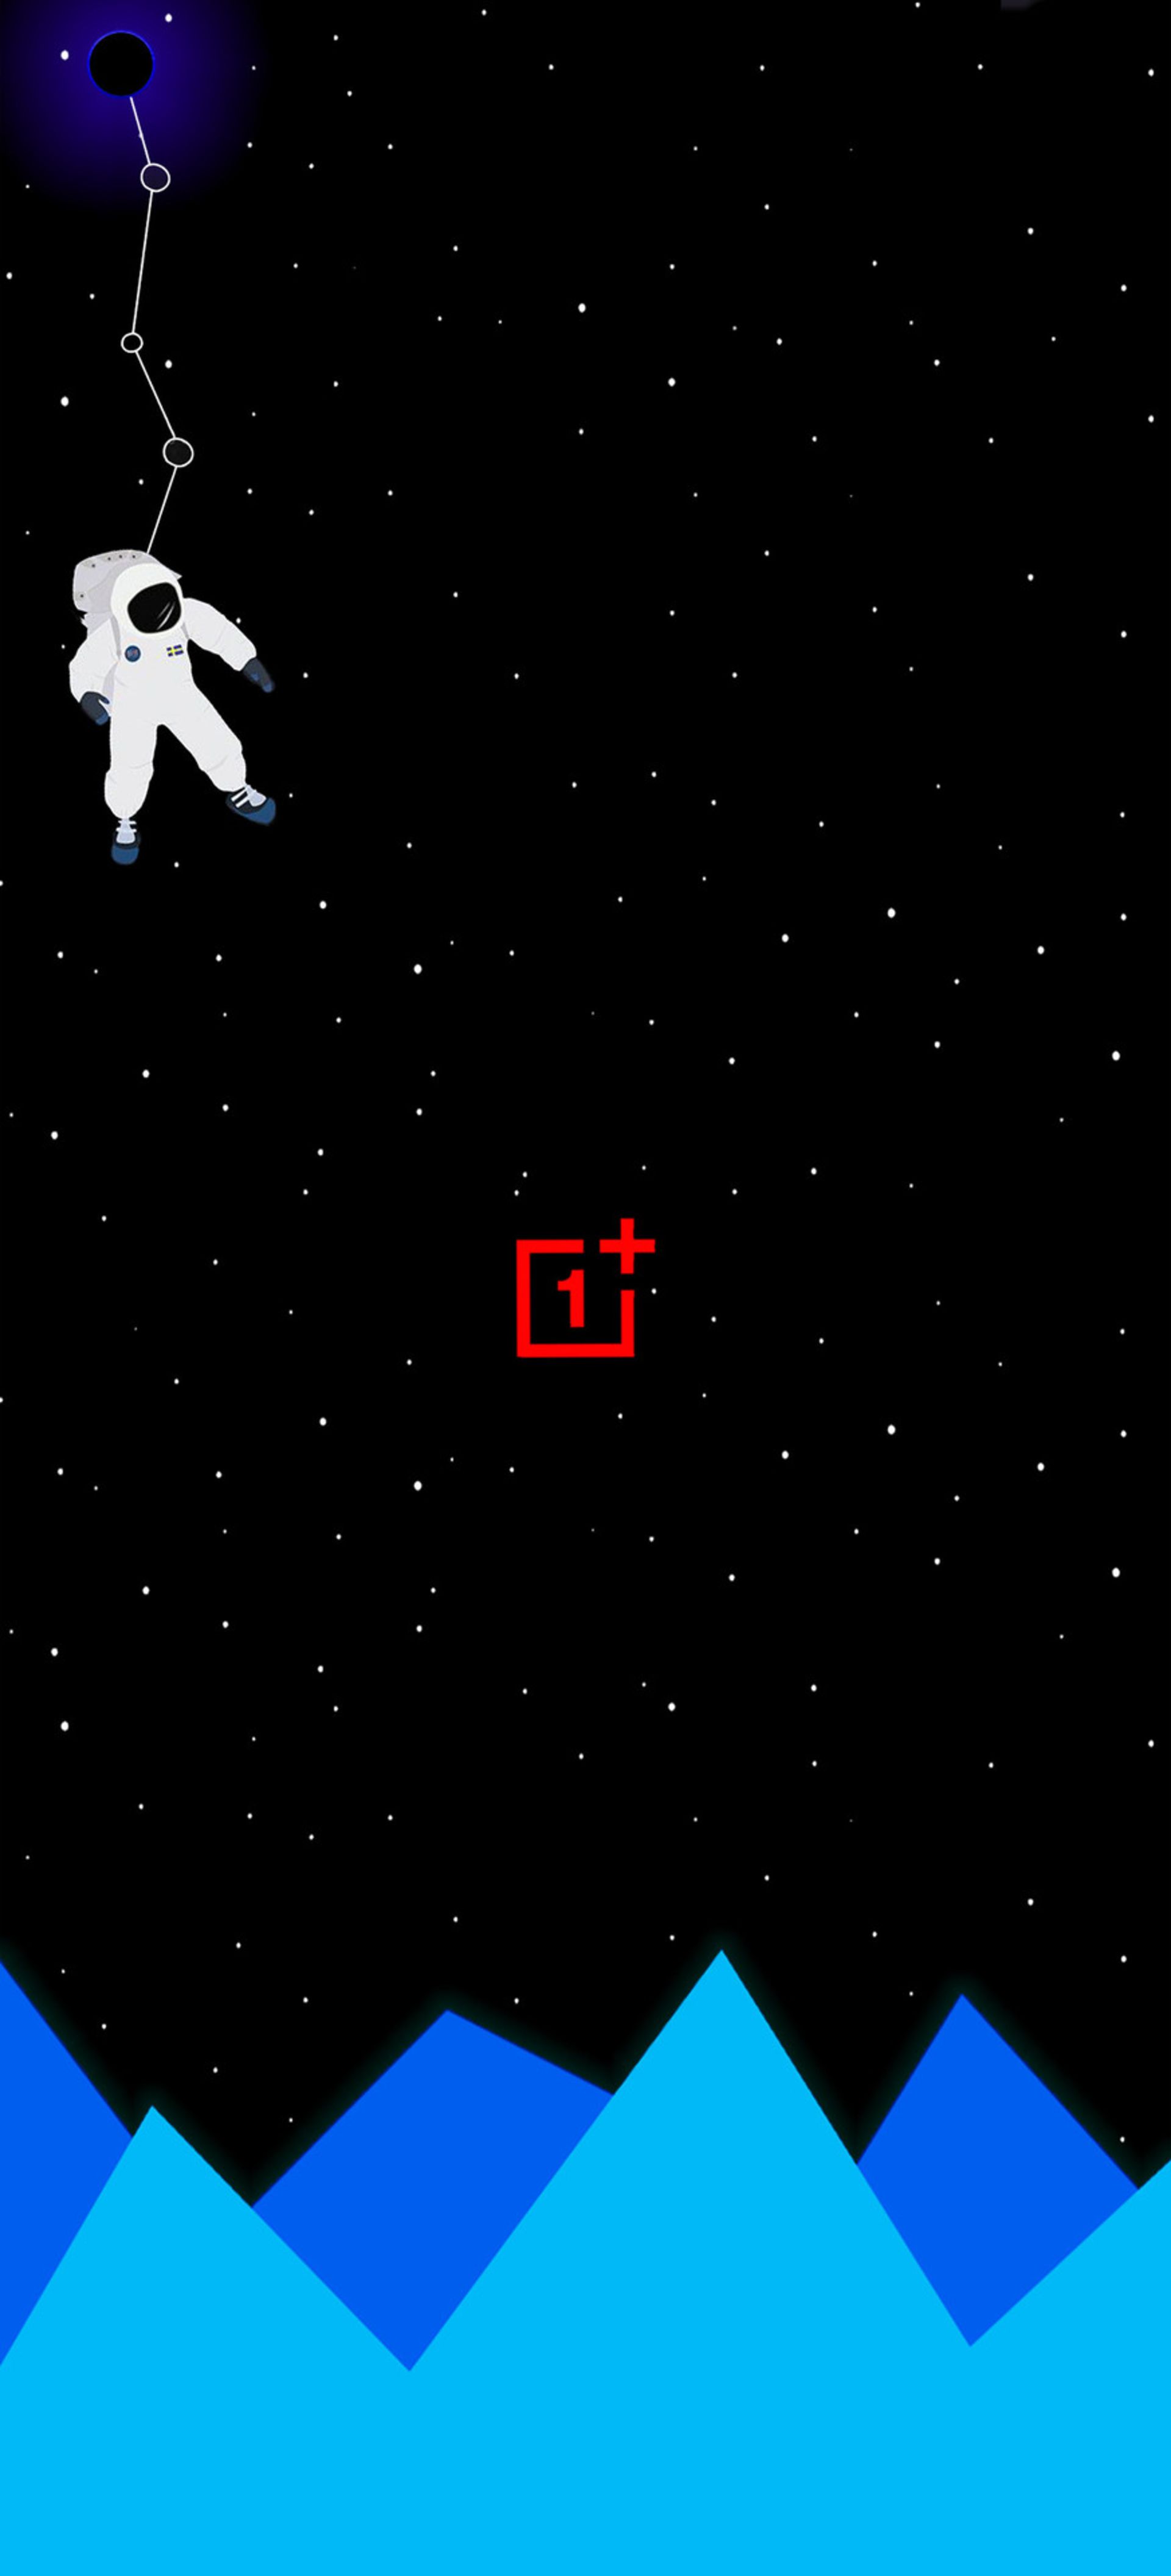 مرجع متخصصين ايران دانلود والپيپر وان پلاس آسمان پرستاره فضانورد لوگو قرمز OnePlus